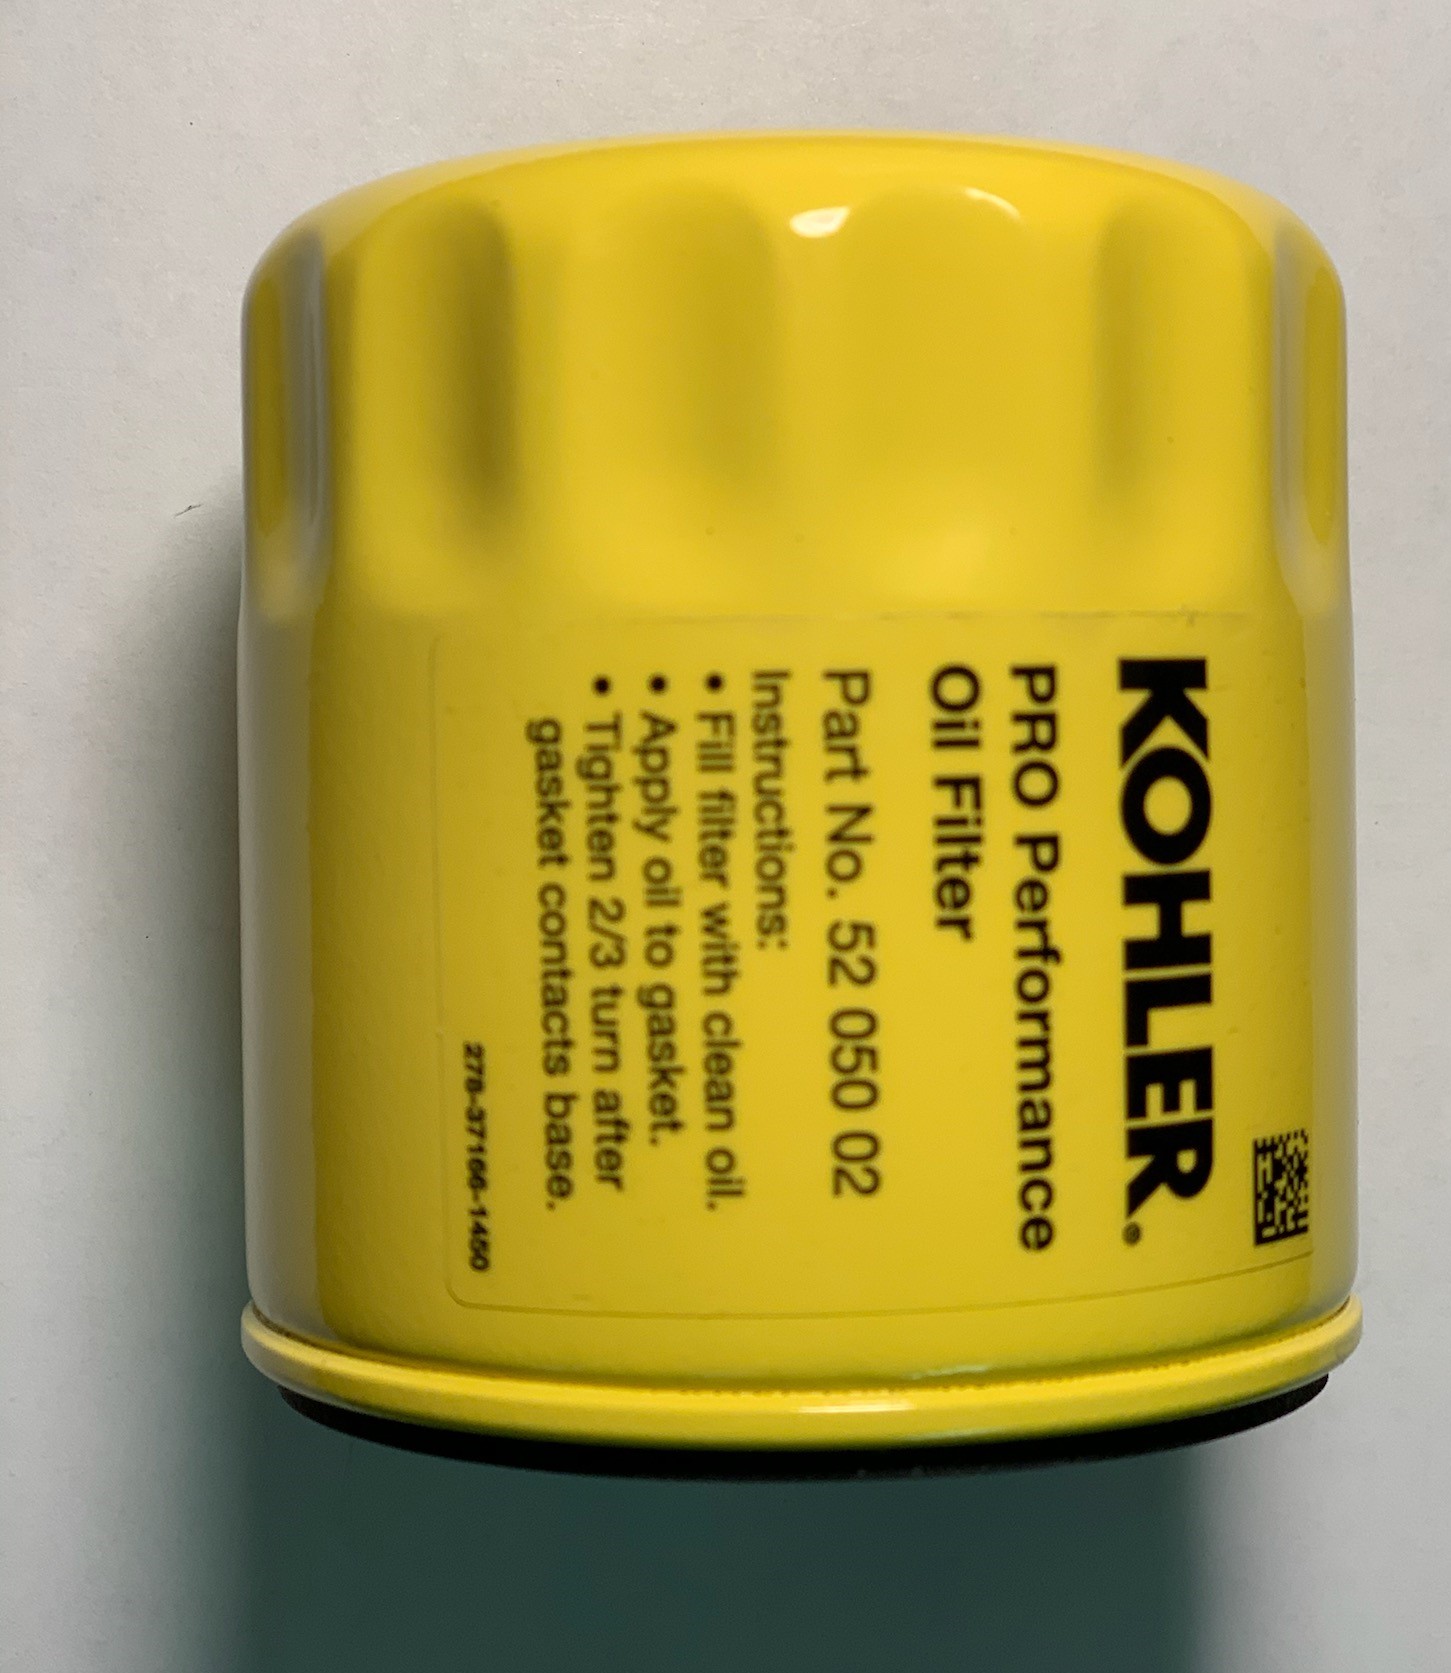 KOHLER OIL FILTERS 52 050 02-S As Seen In...